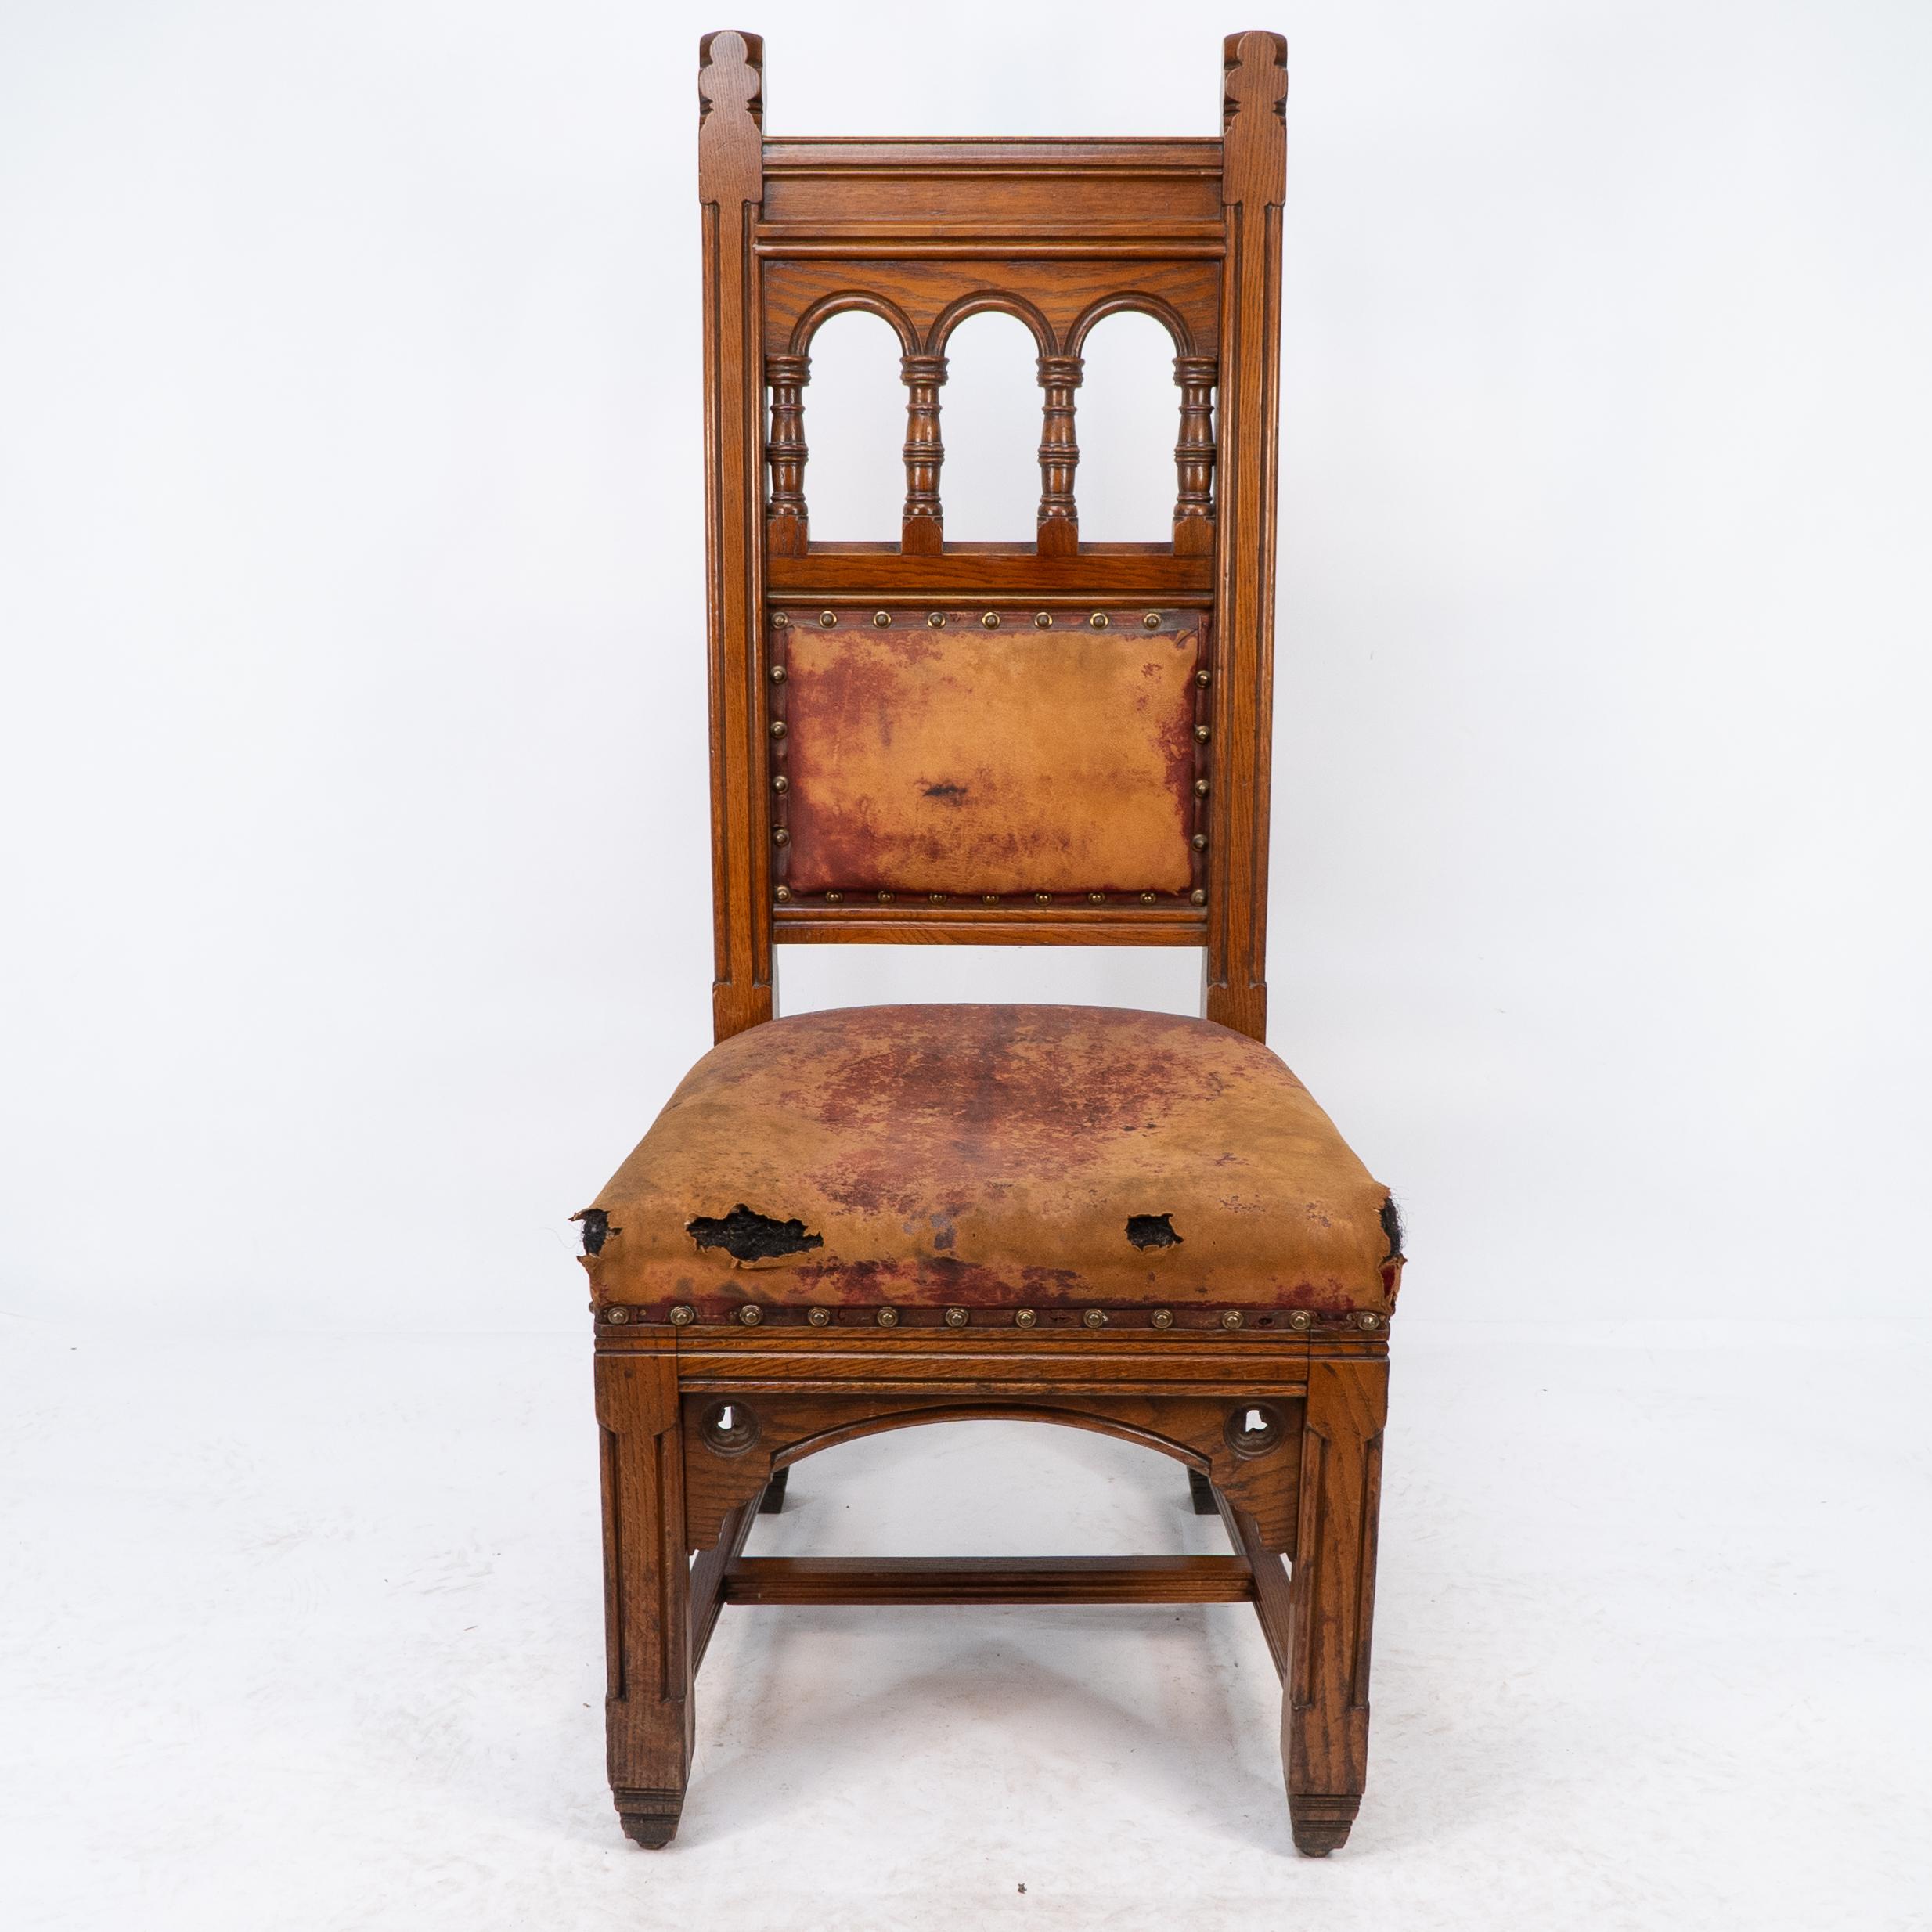 Bruce Talbert. Gillows. Rare et importante chaise en chêne à dossier haut de style néo-gothique, dont l'assise et le dossier sont en cuir d'origine.
La dernière image est publiée dans le livre de Bruce Talbert 